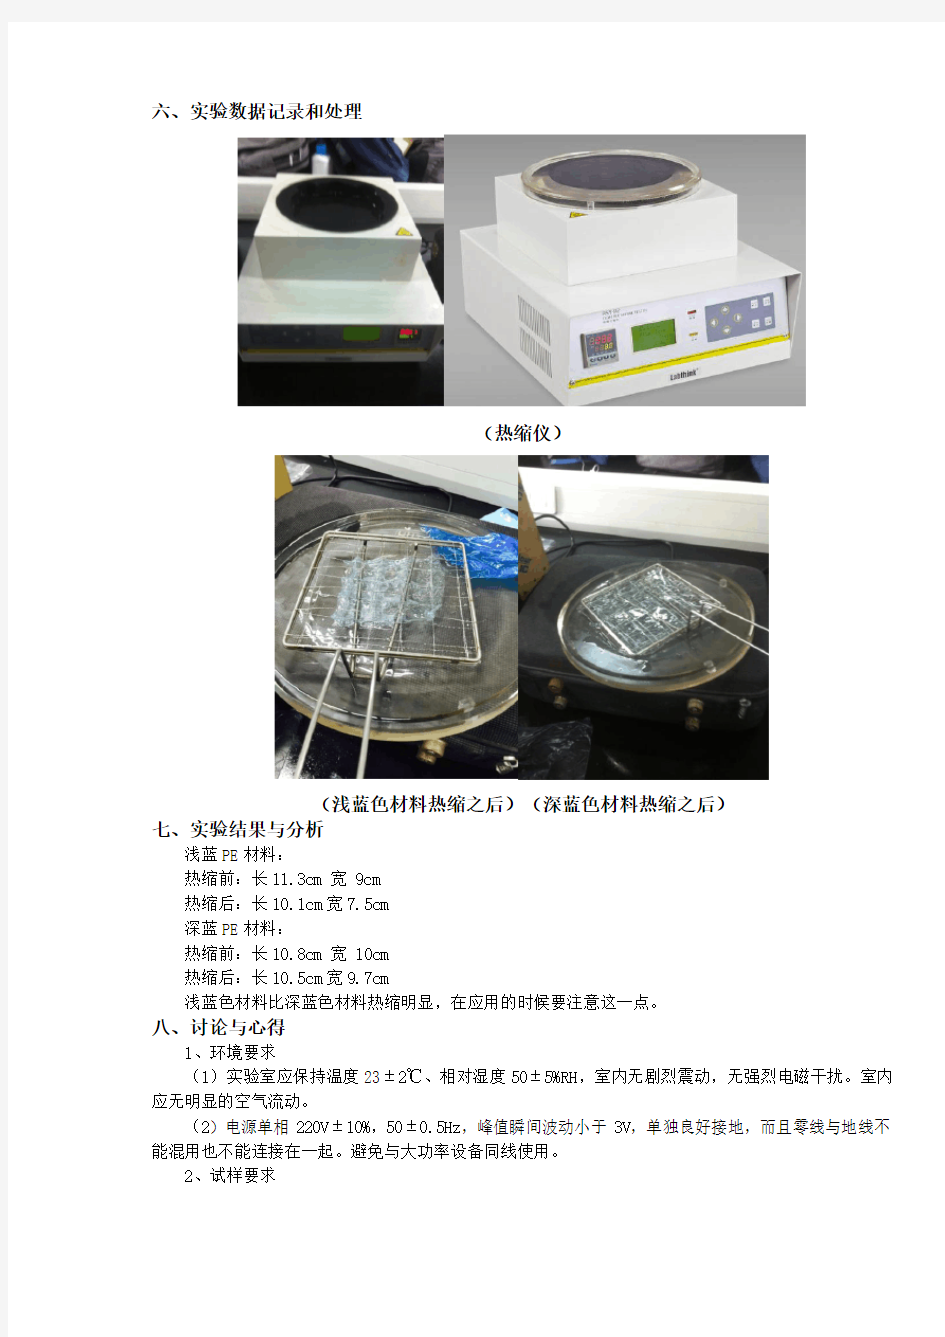 浙大食品包装设计实验报告RSY-R2热缩试验仪的使用